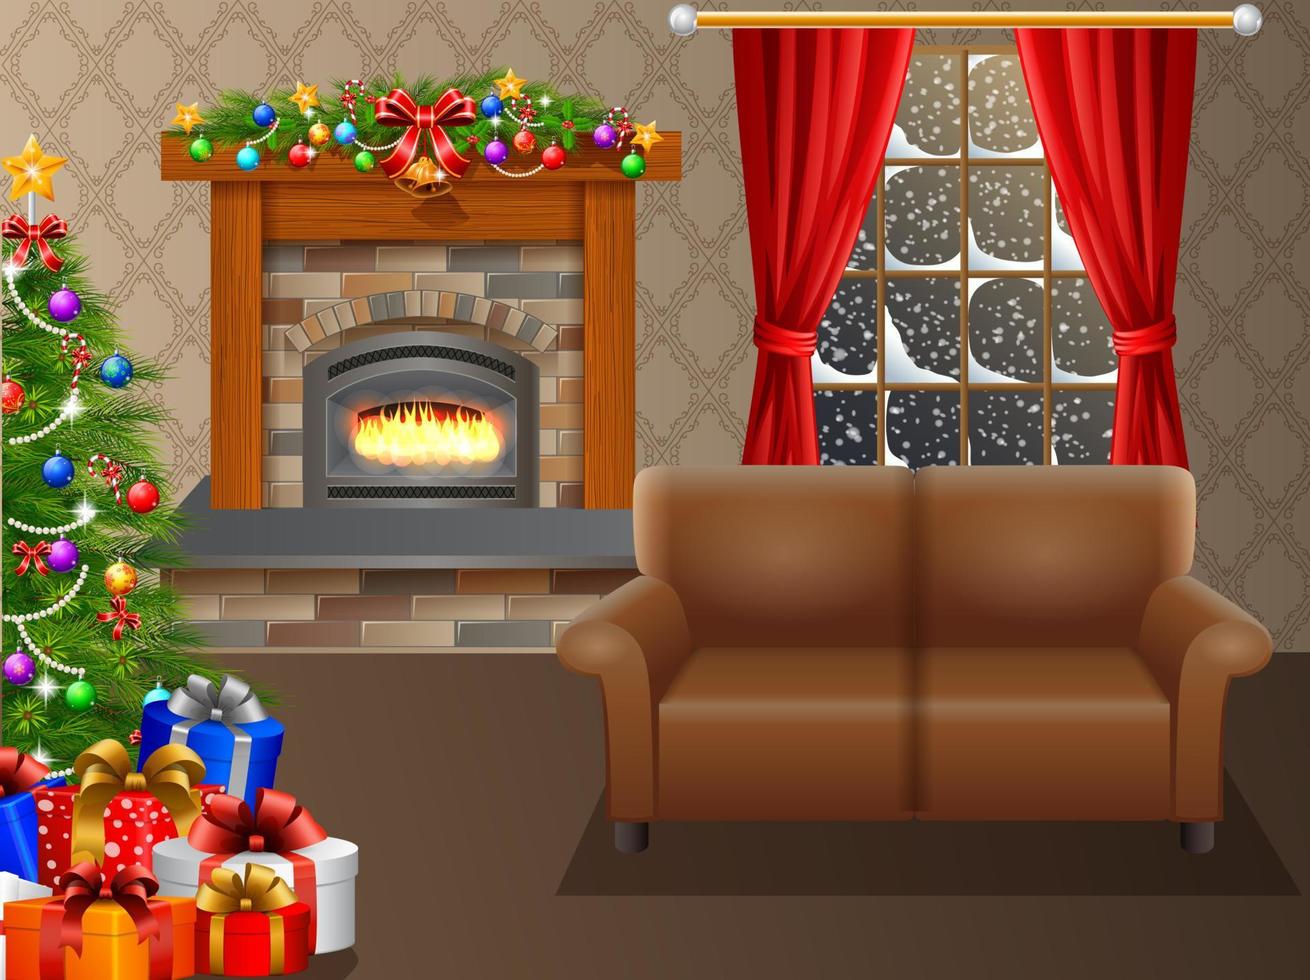 öppen spis och jul träd med presenterar i levande rum vektor